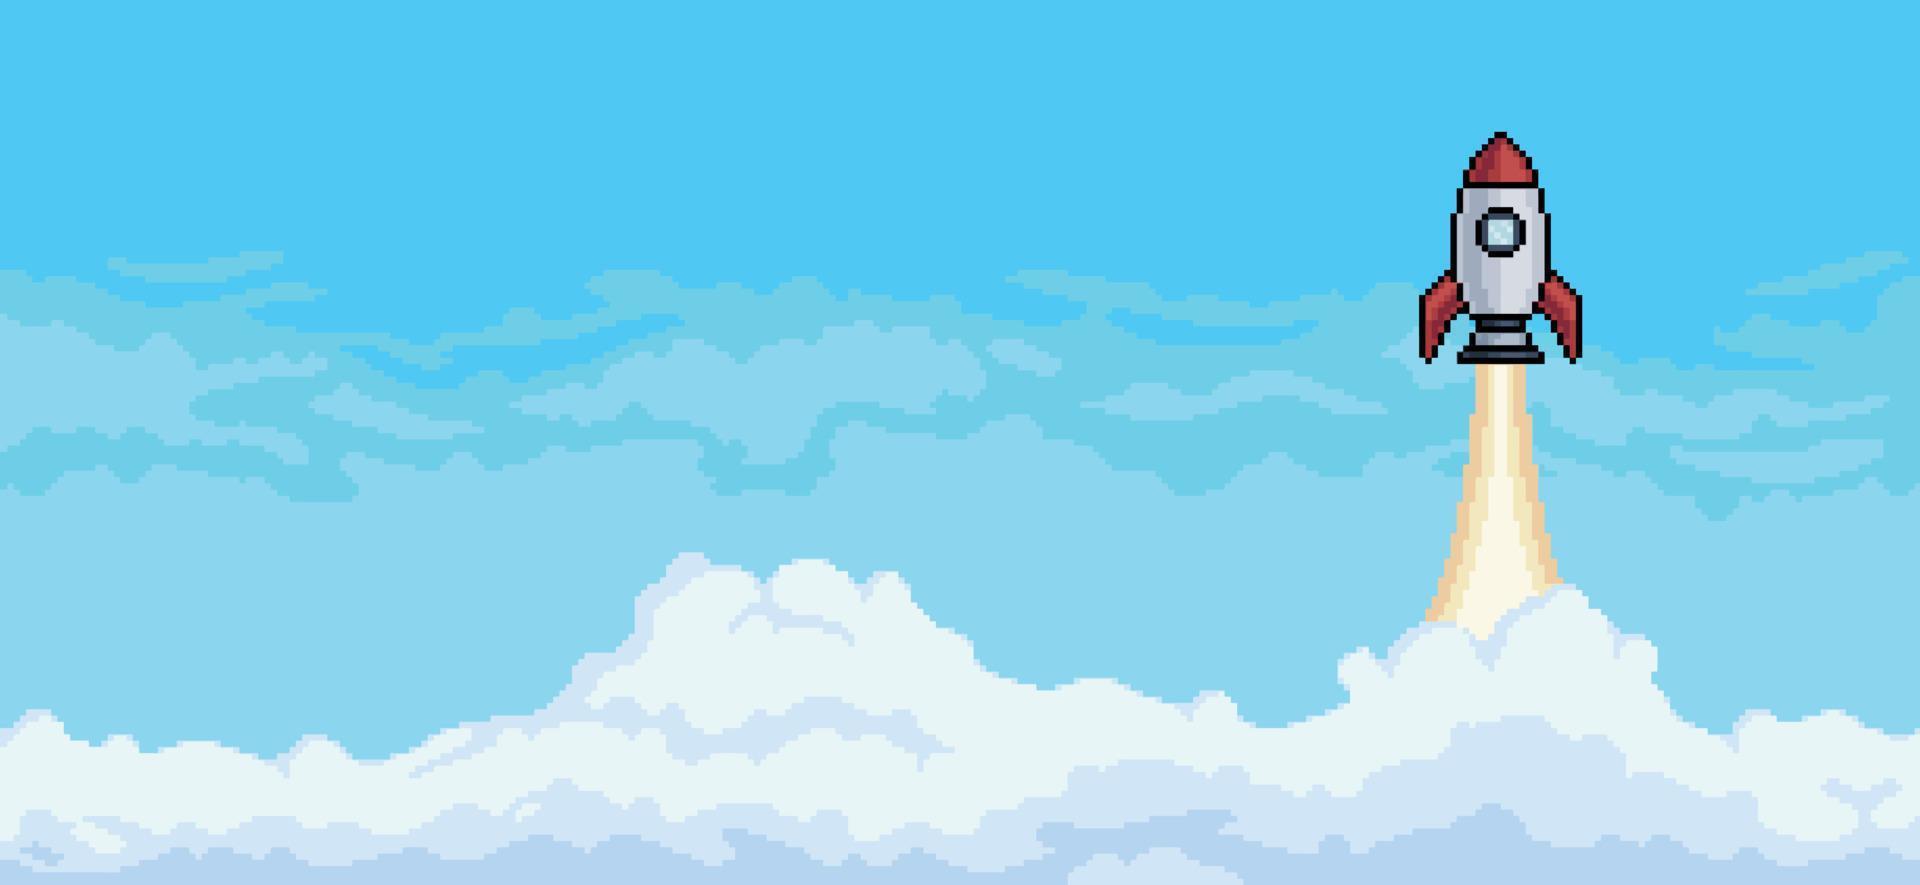 fundo de pixel art com foguete voando no céu com vetor de fundo de nuvens para jogo de 8 bits